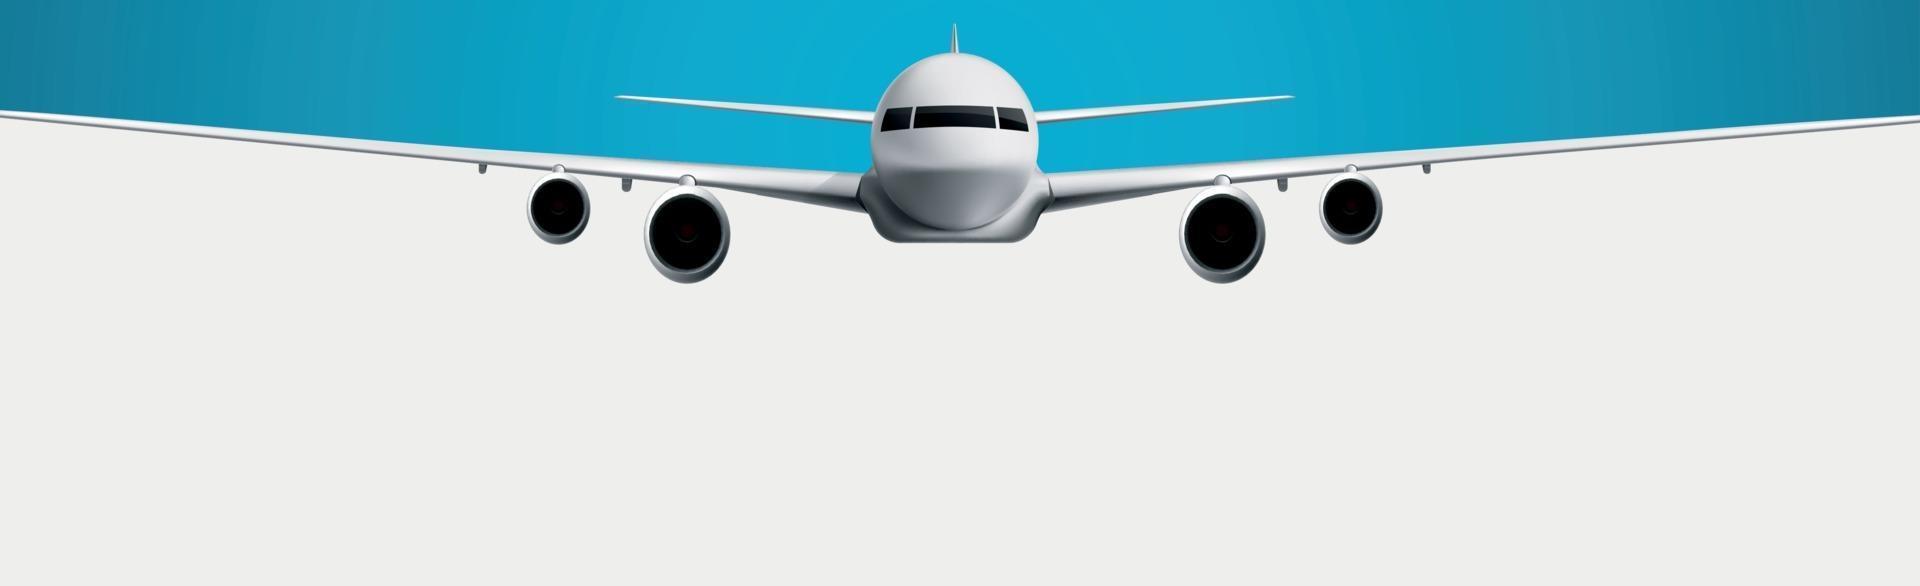 realistisch model van een burgerluchtvaartuig op een witte en blauwe achtergrond - vector